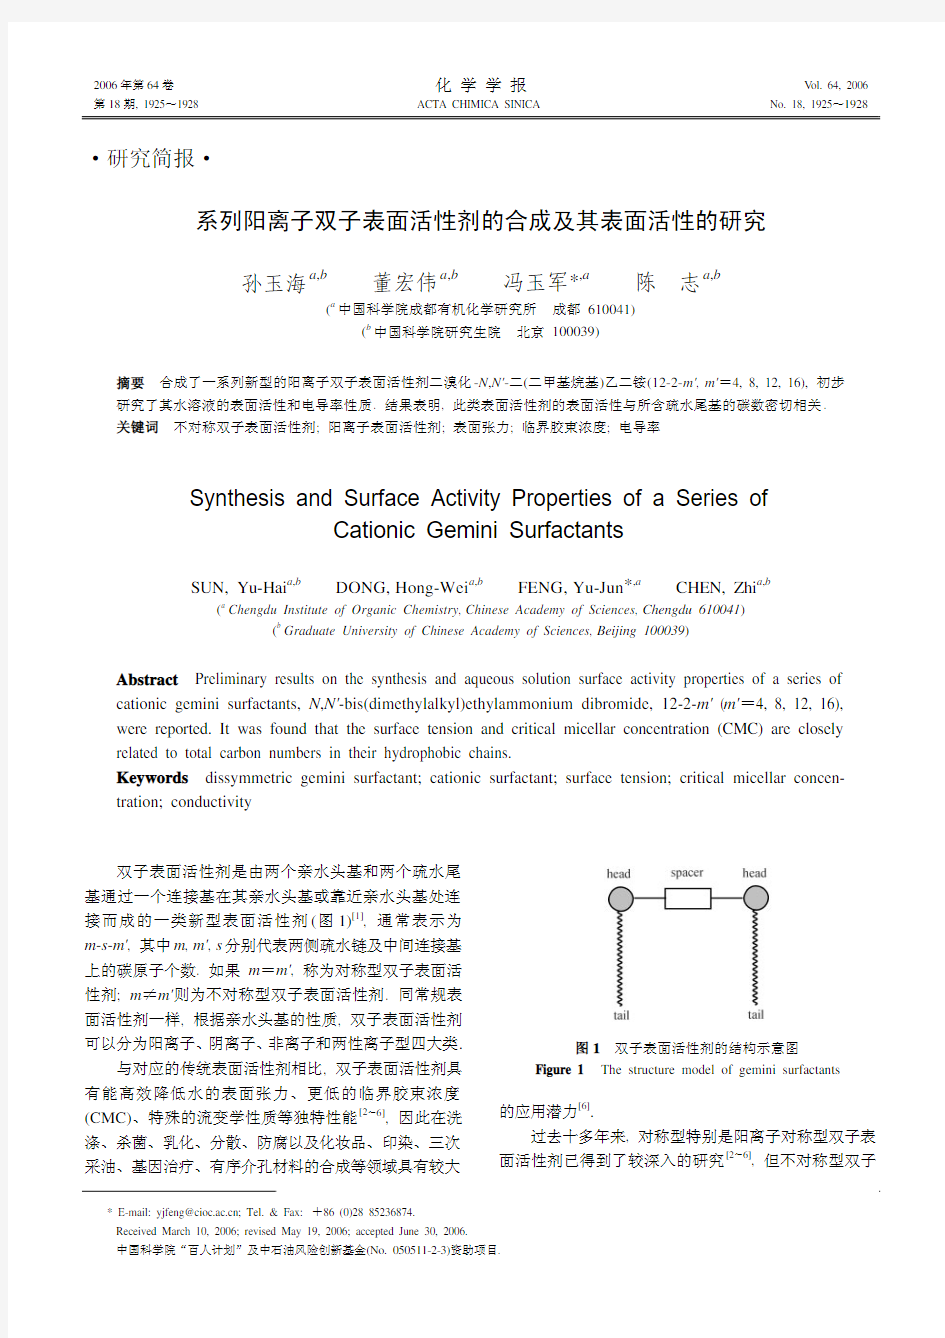 阳离子型双子表面活性剂的合成及表面活性